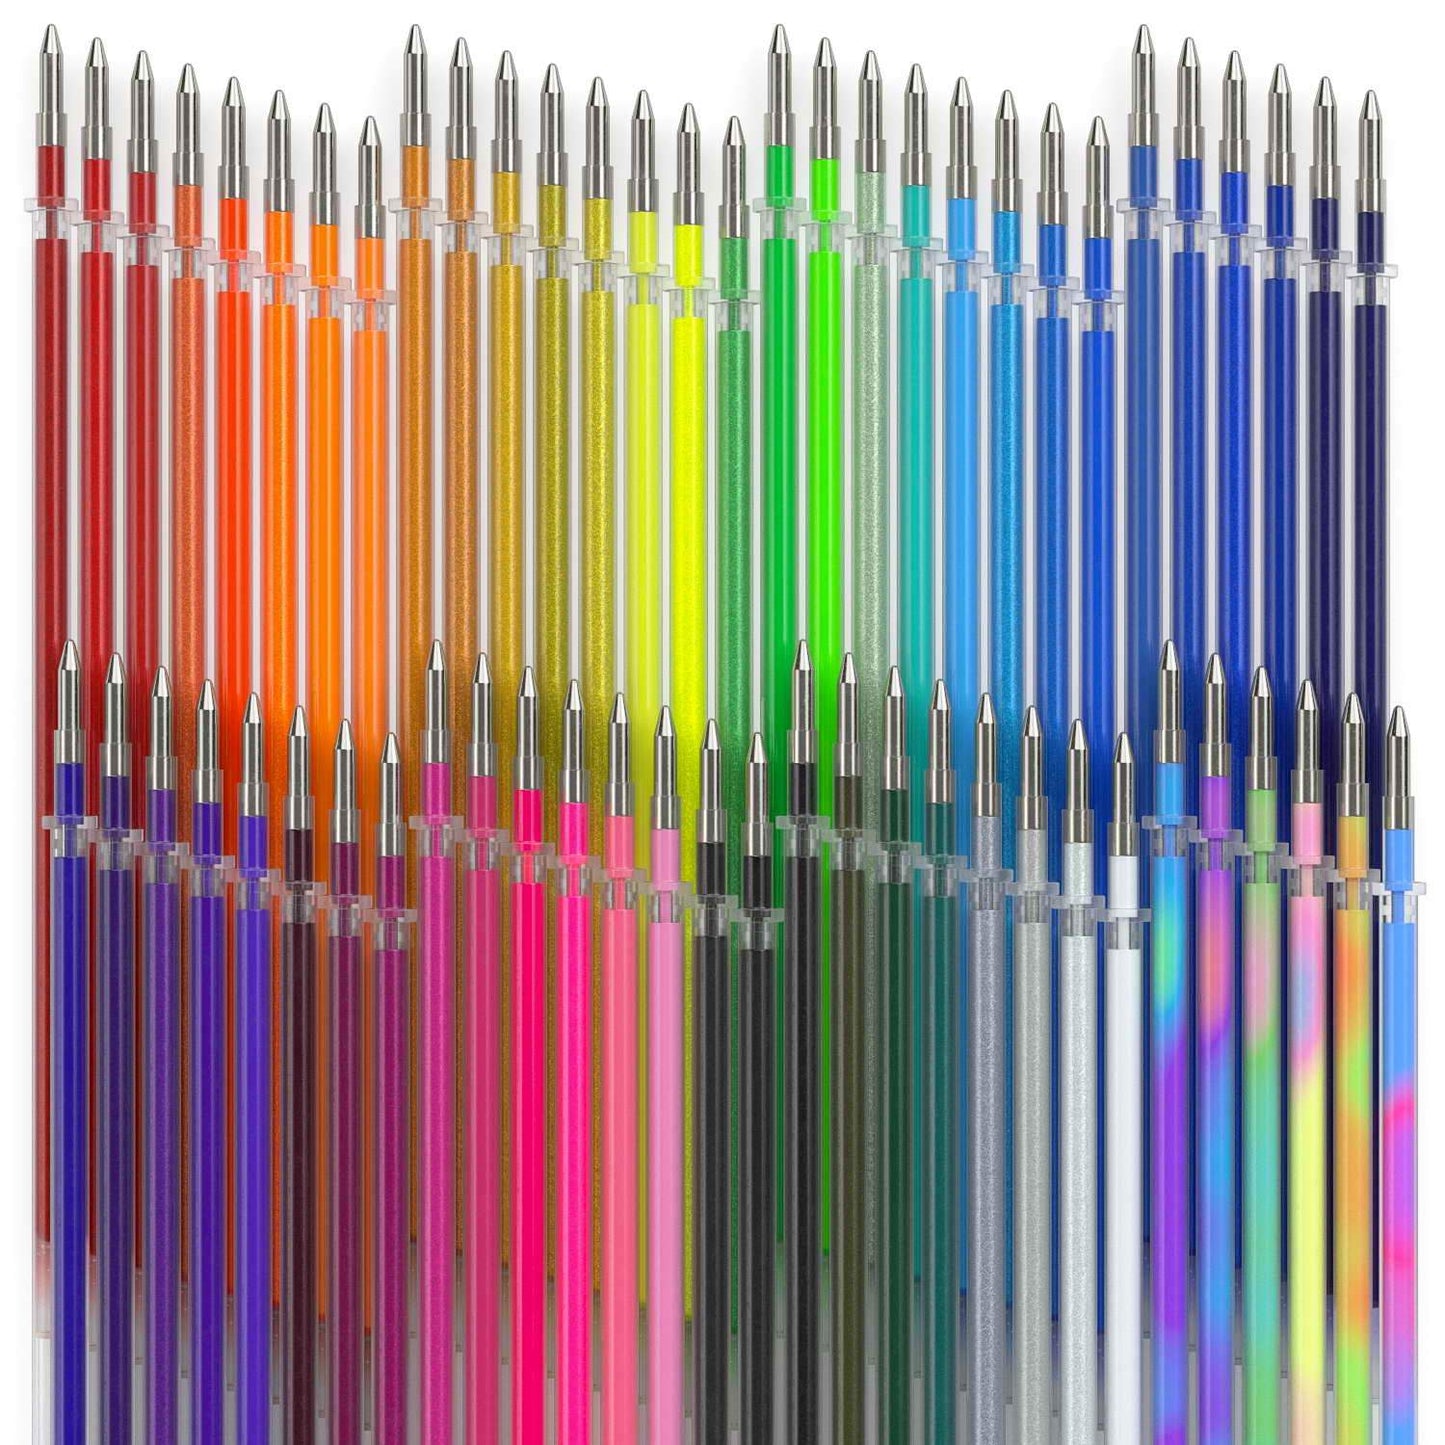 Gel Ink Pen Refills - Set of 60